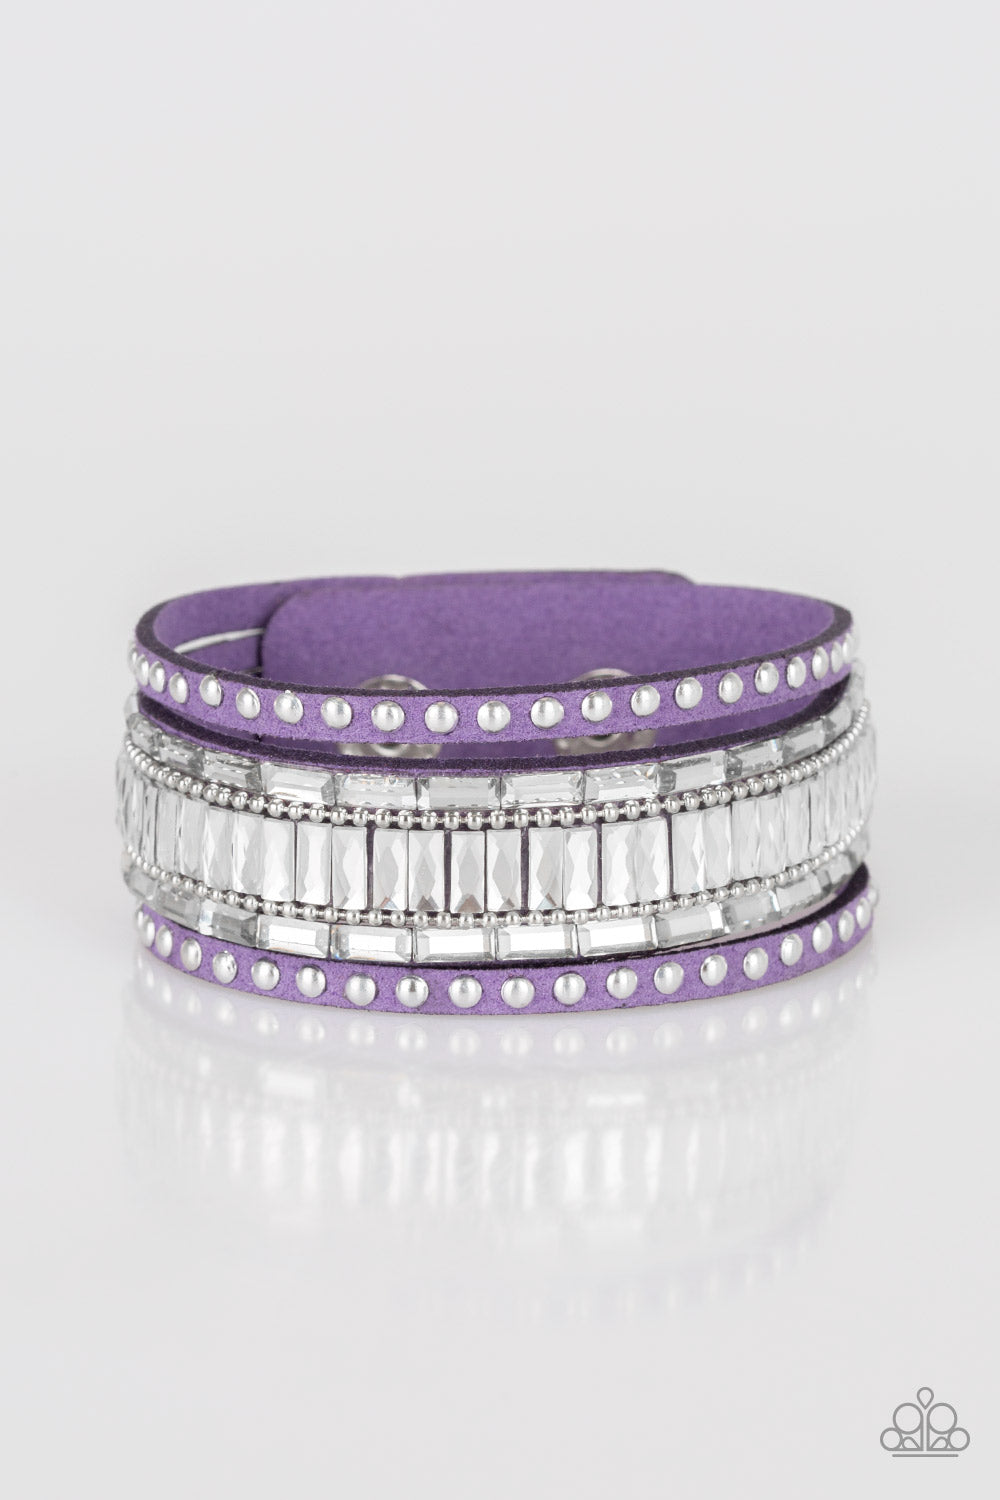 Rock Star Rocker - Purple wrap bracelet